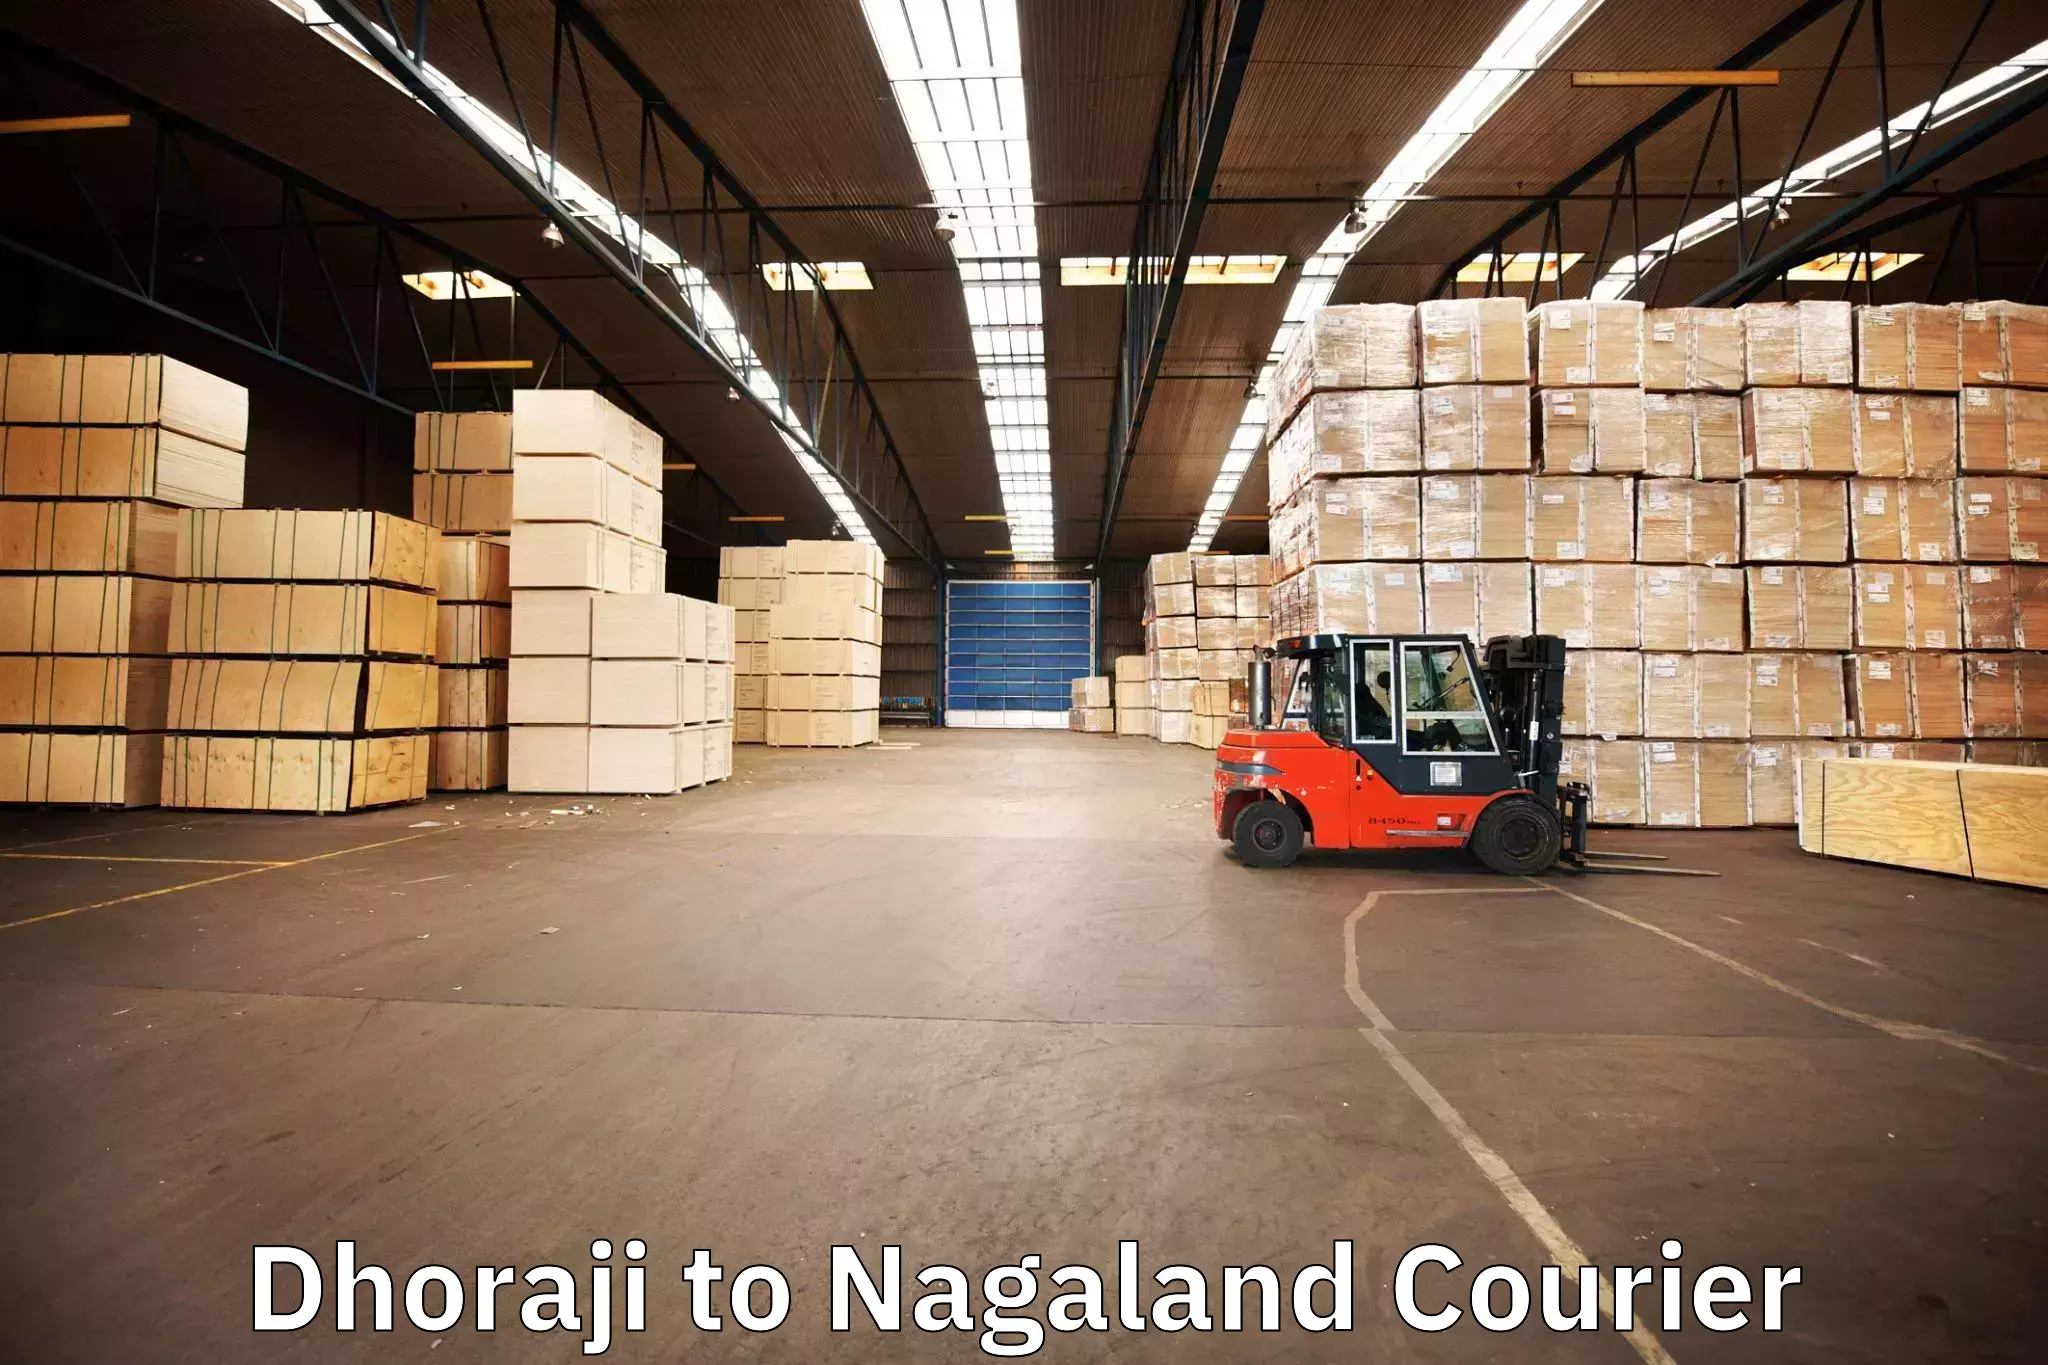 Furniture delivery service Dhoraji to Nagaland